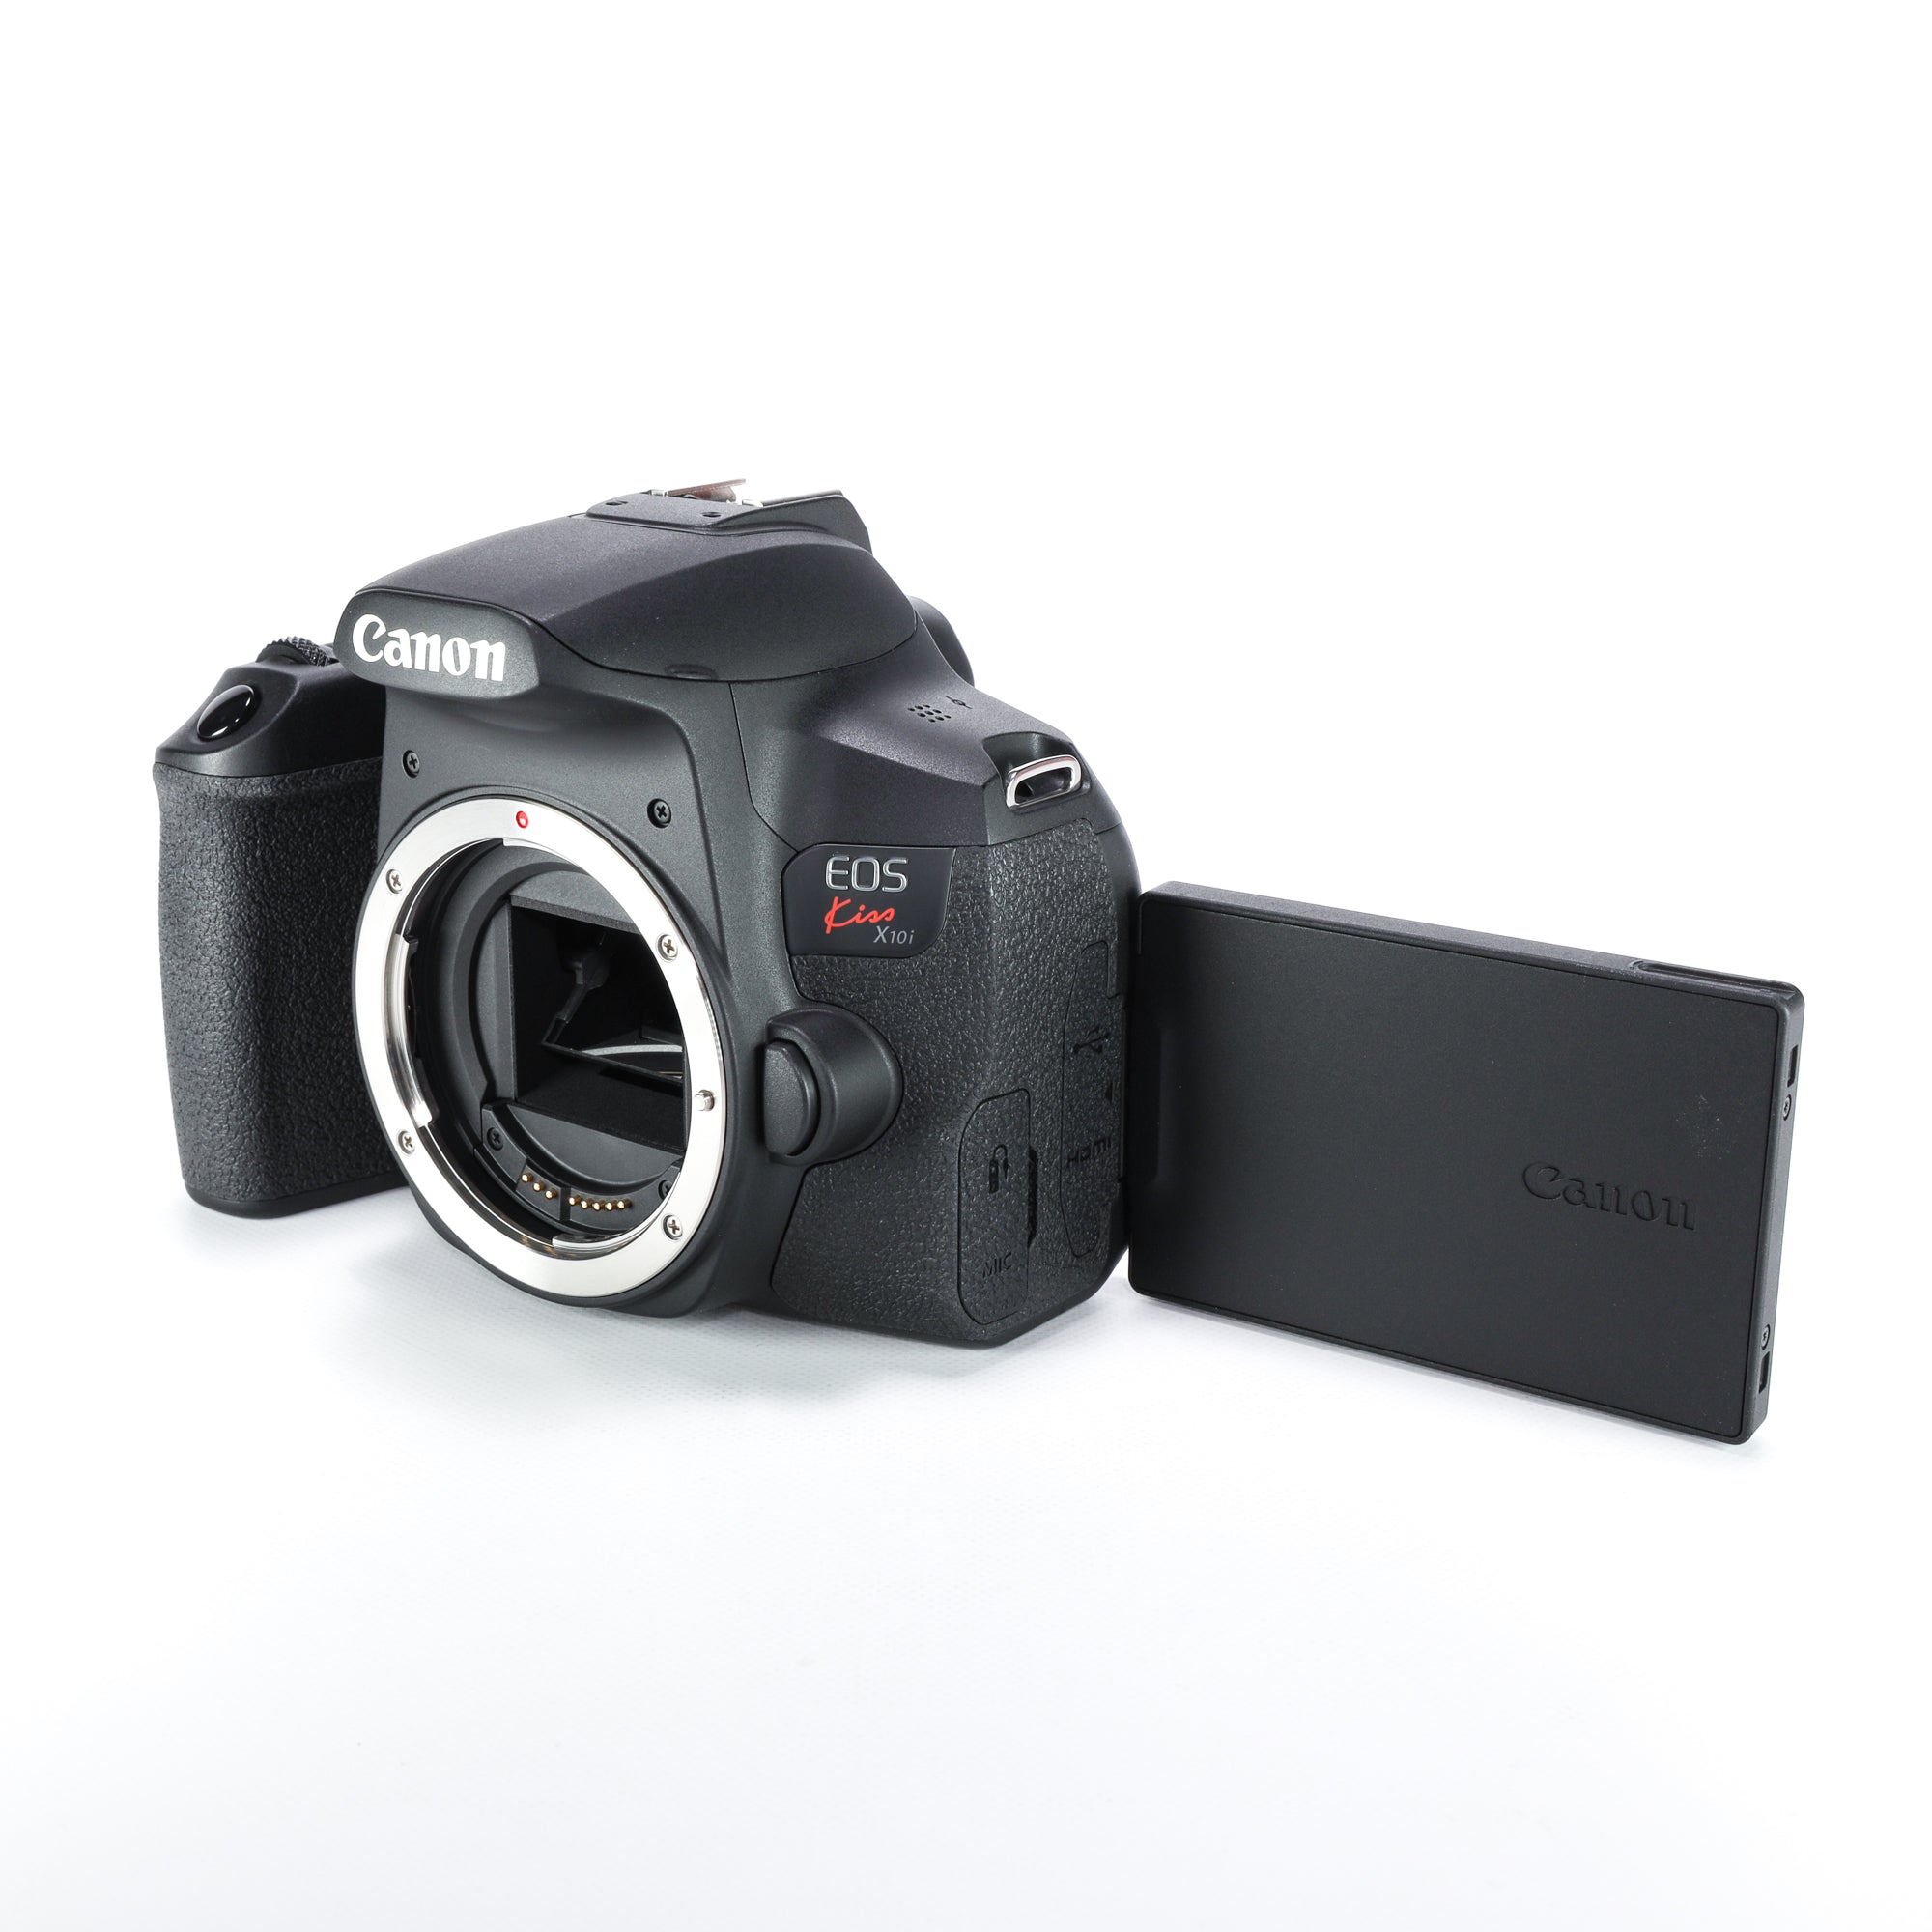 Canon デジタル一眼レフカメラ EOS Kiss X10i ボディ EOSKISSX10I - 1